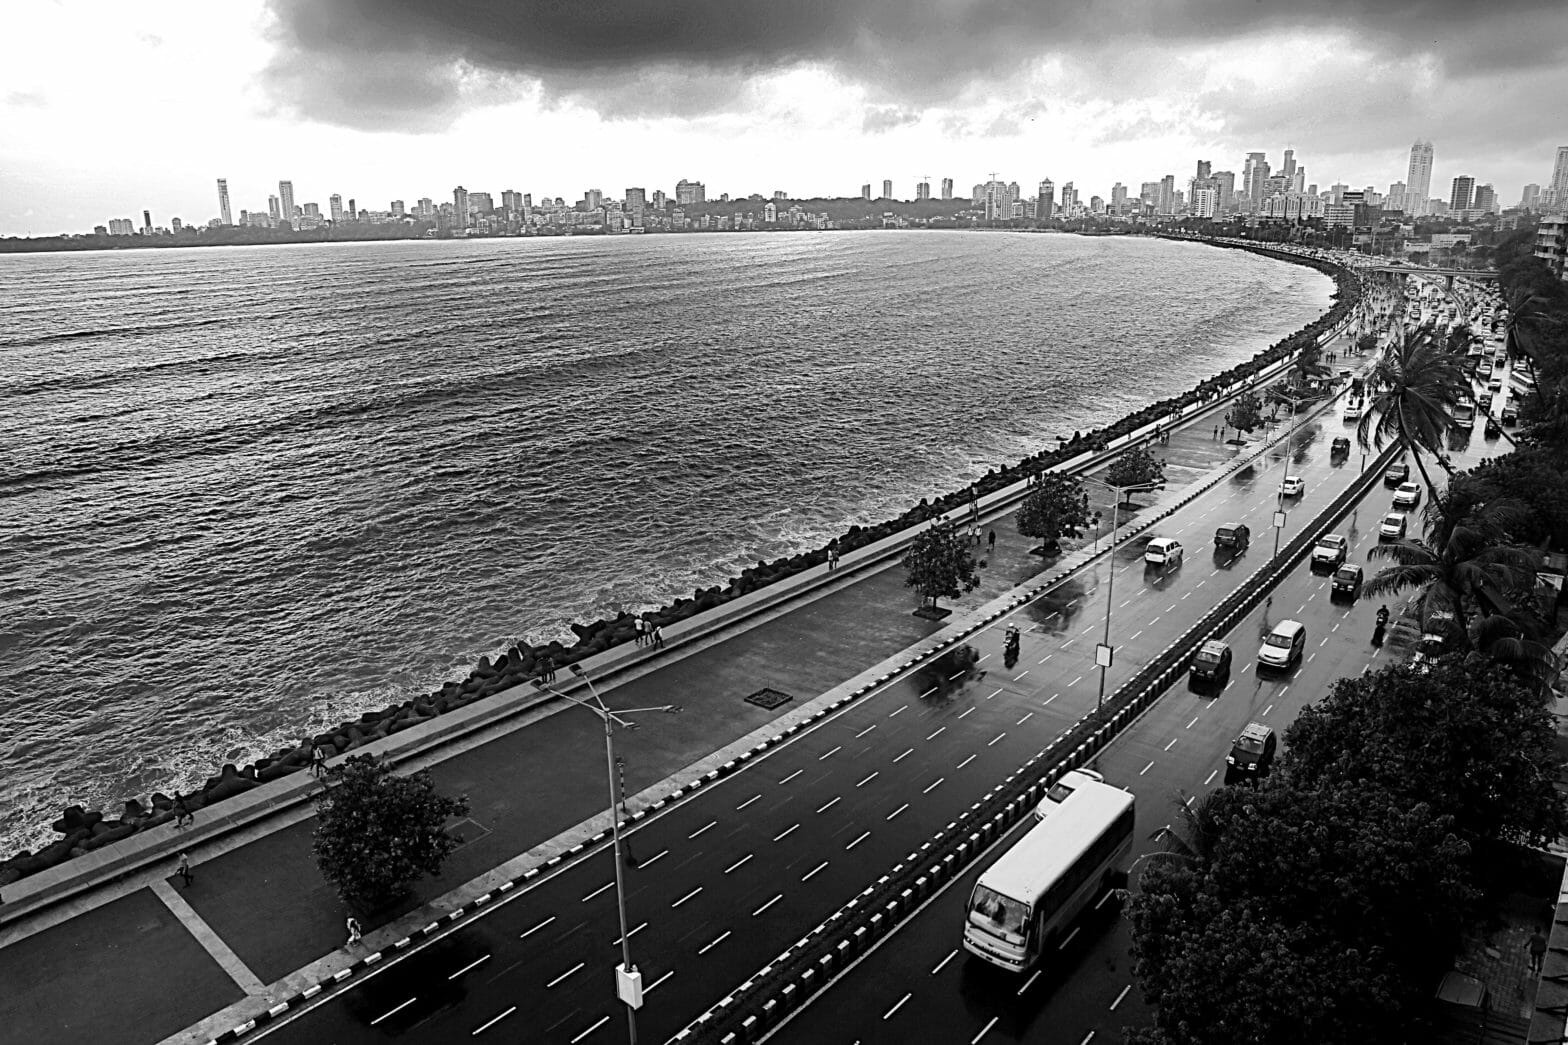 Aerial view of Mumbai city